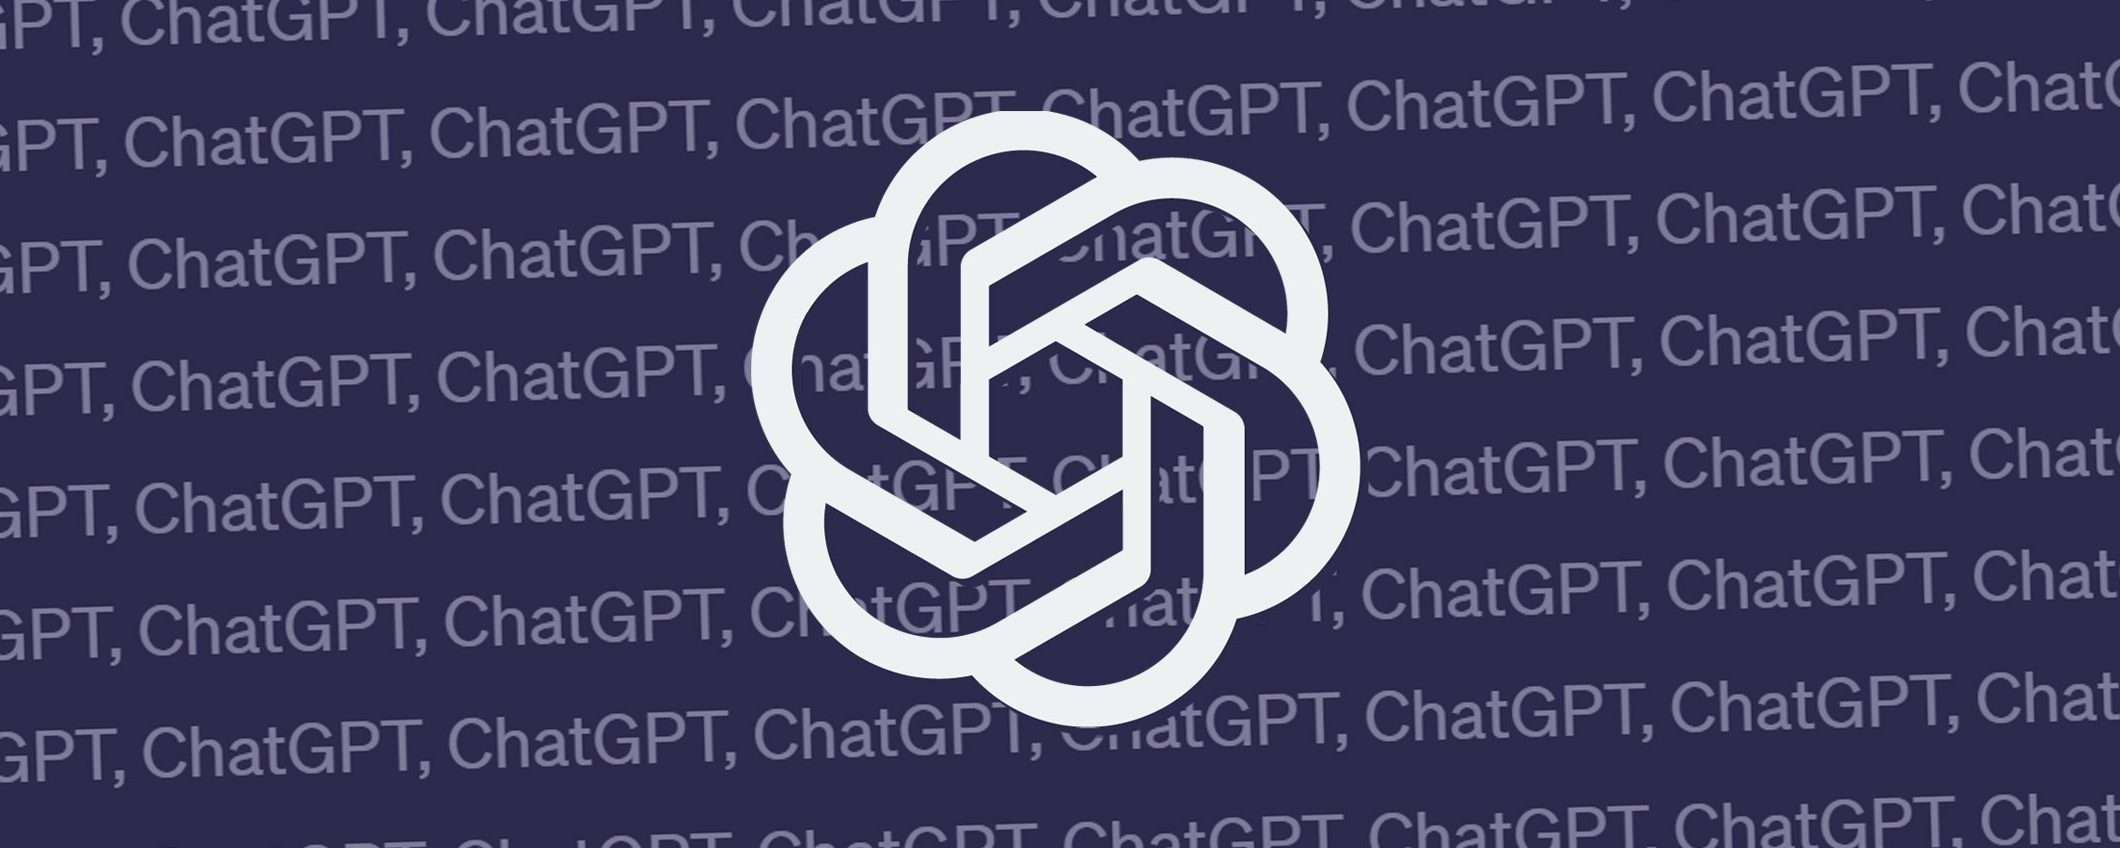 ChatGPT potrebbe diventare l'assistente predefinito su Android